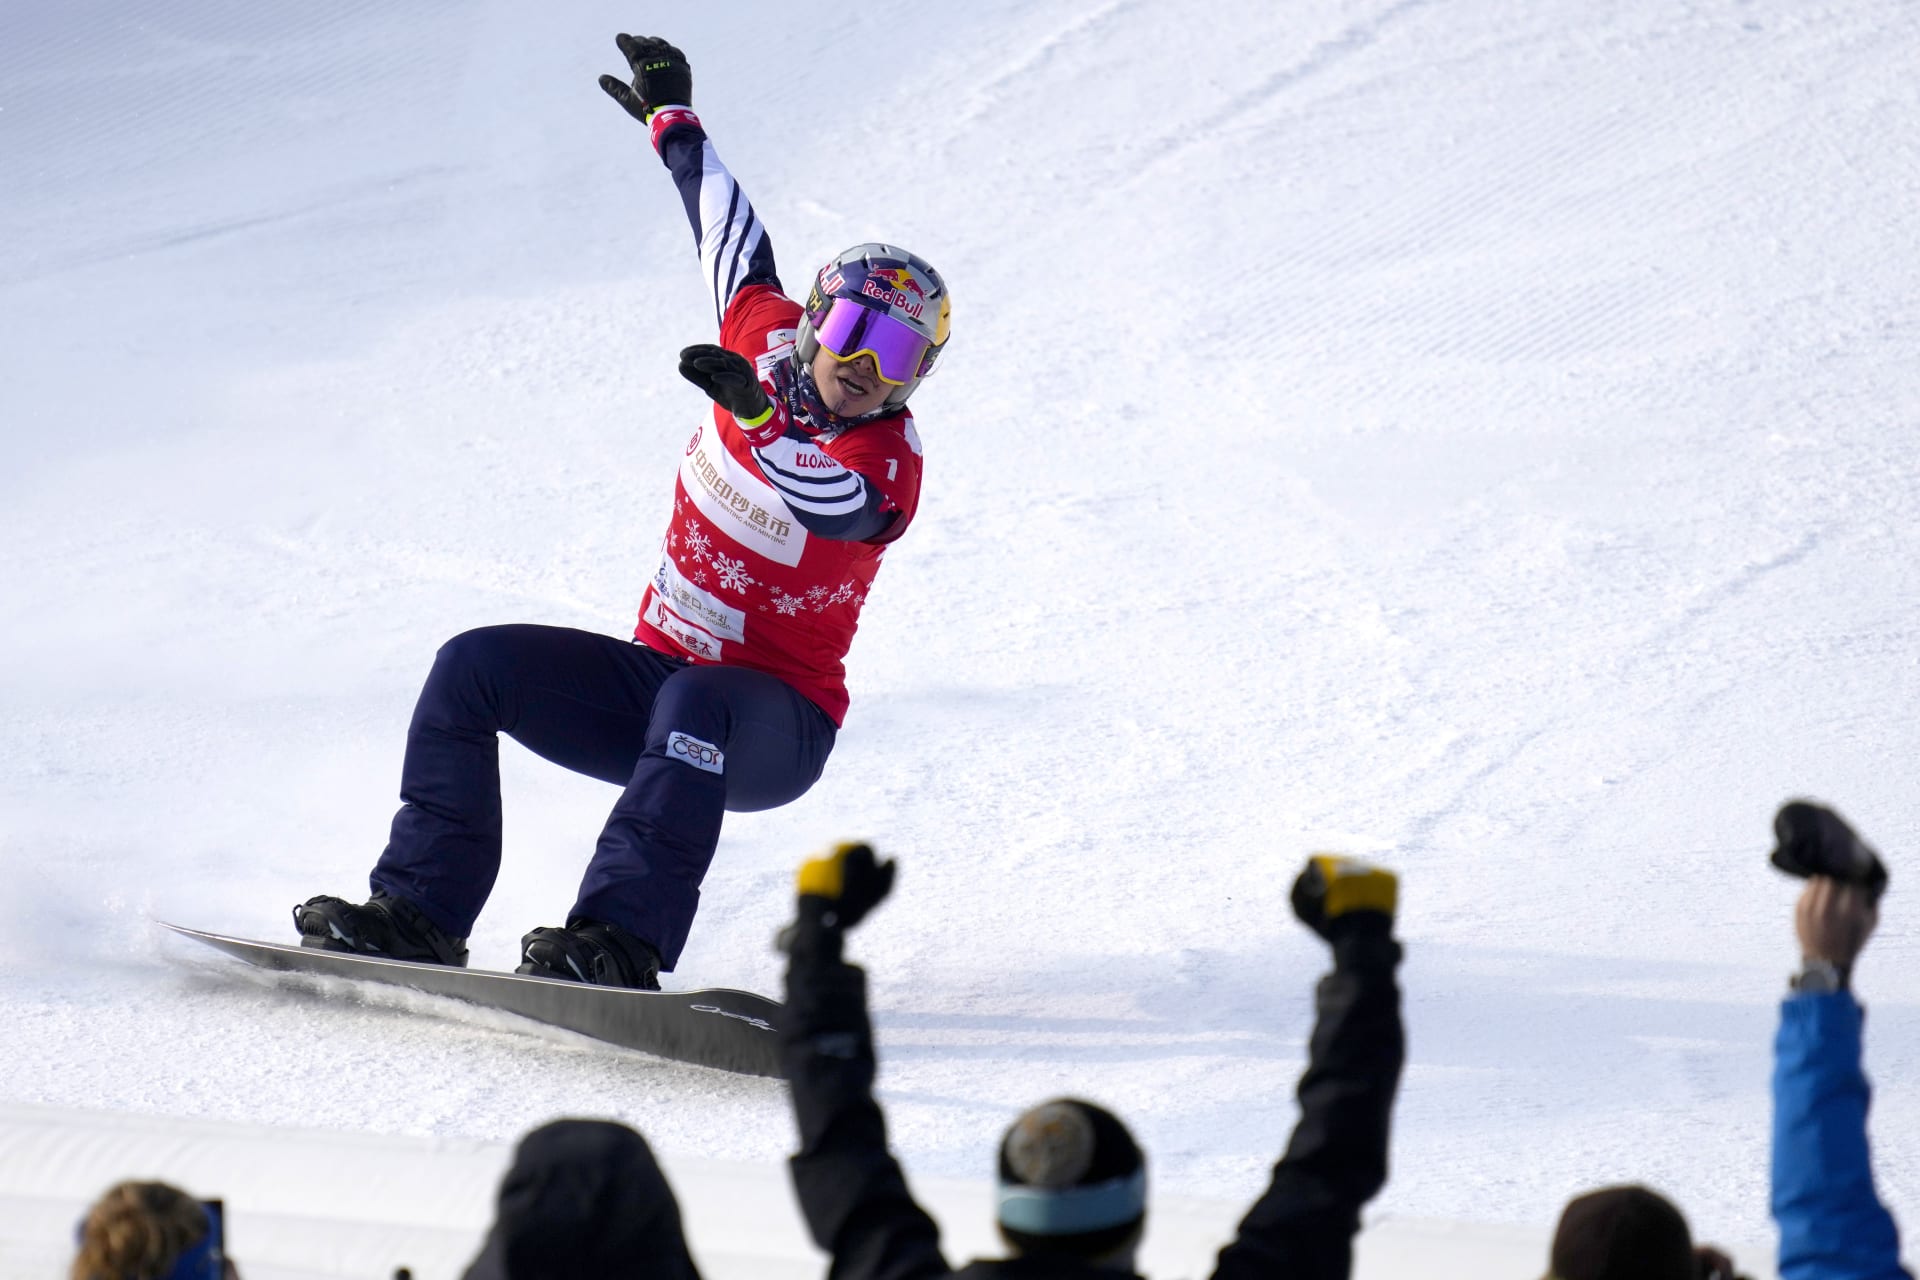 Snowboardcrossařka Eva Samková se bude po operaci zlomených kotníků léčit nejméně několik týdnů. Prognózy směrem k celé olympijské sezoně zatím nejsou.